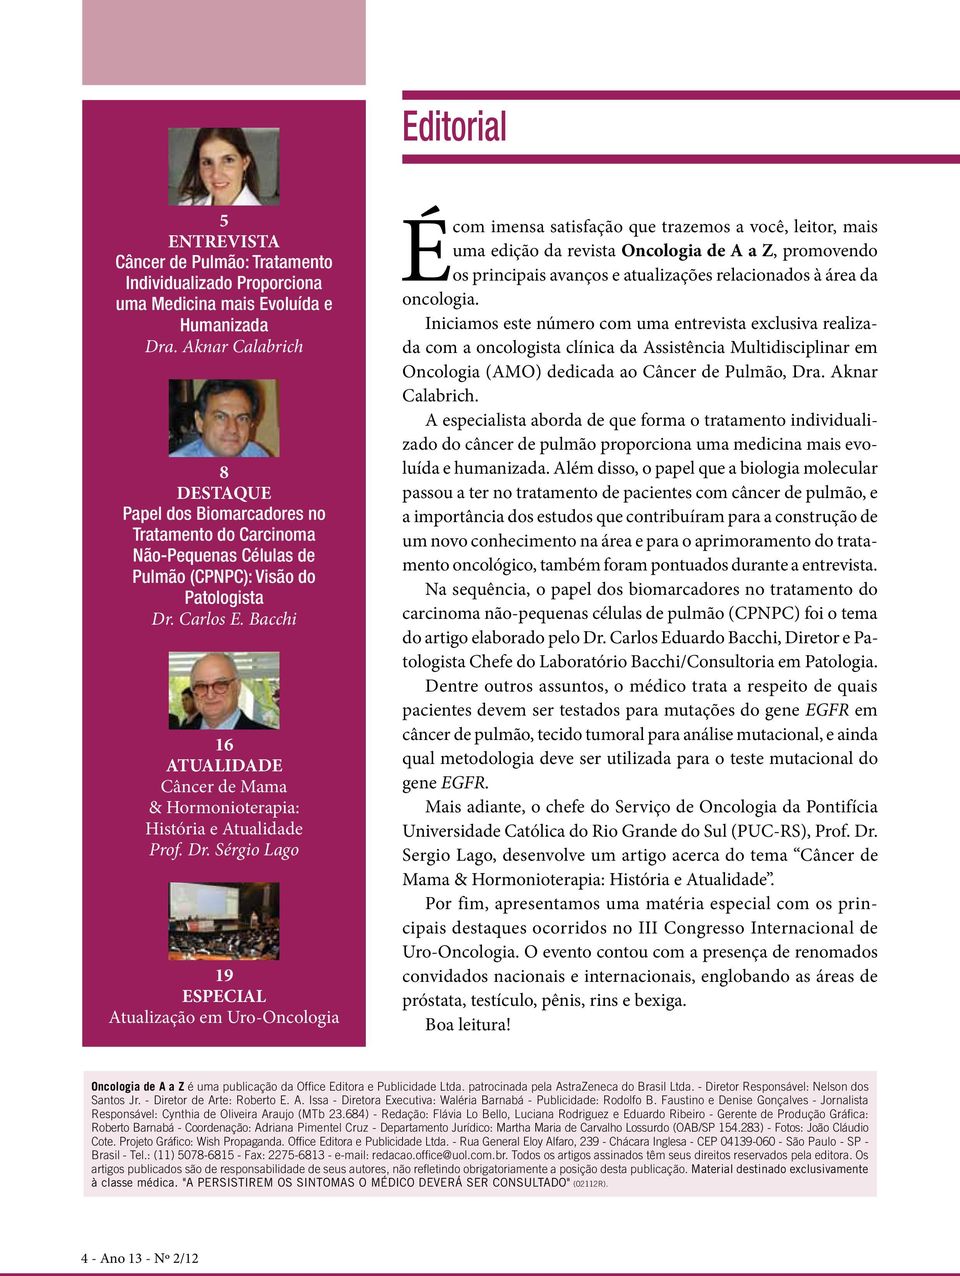 Bacchi 16 ATUALIDADE Câncer de Mama & Hormonioterapia: História e Atualidade Prof. Dr.